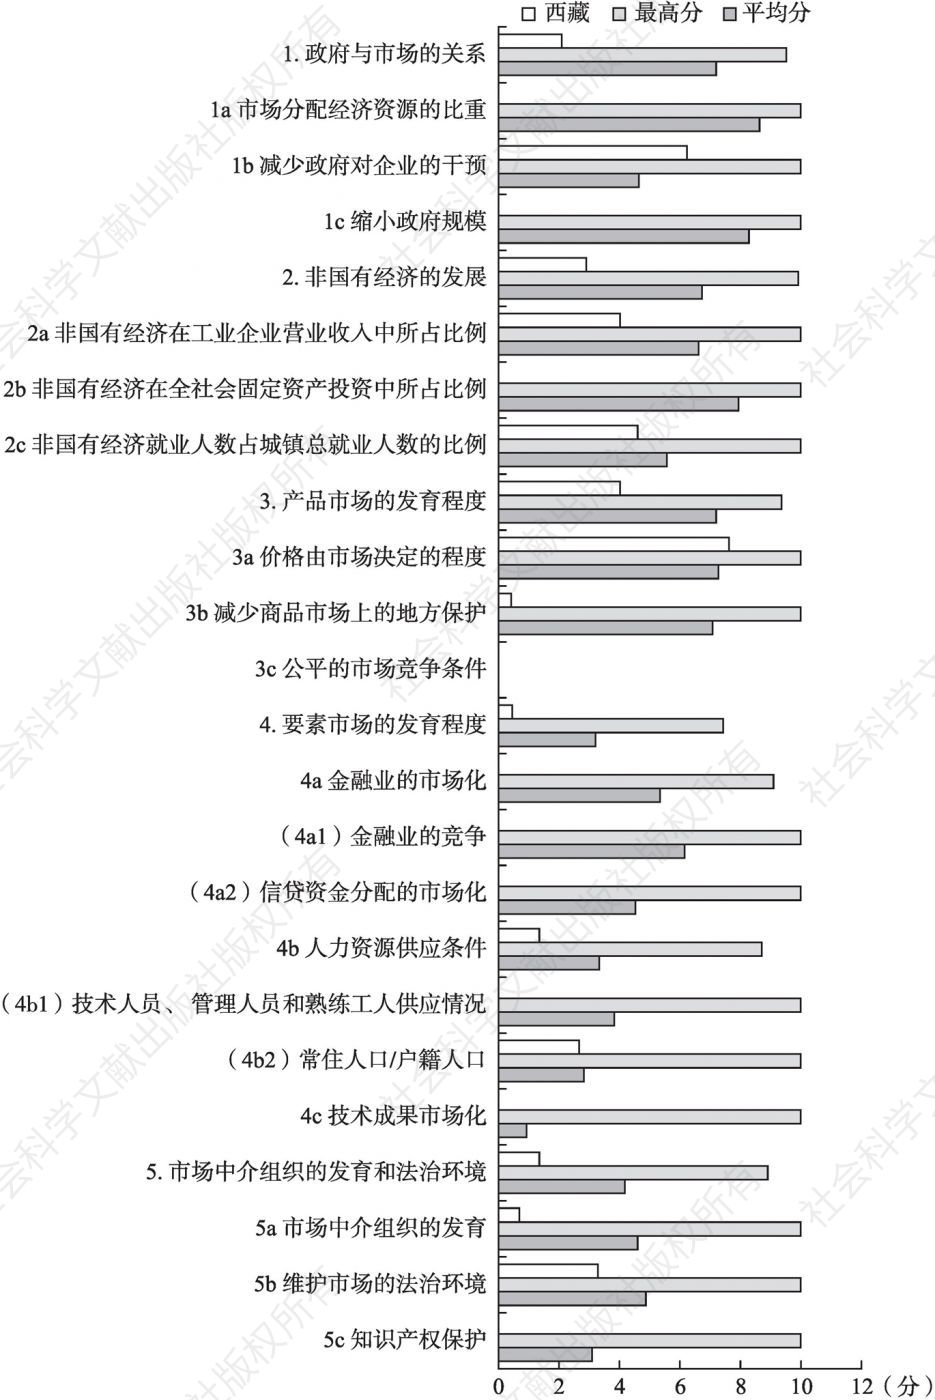 2016年西藏市场化各方面指数和分项指数与全国最高分及平均分的比较